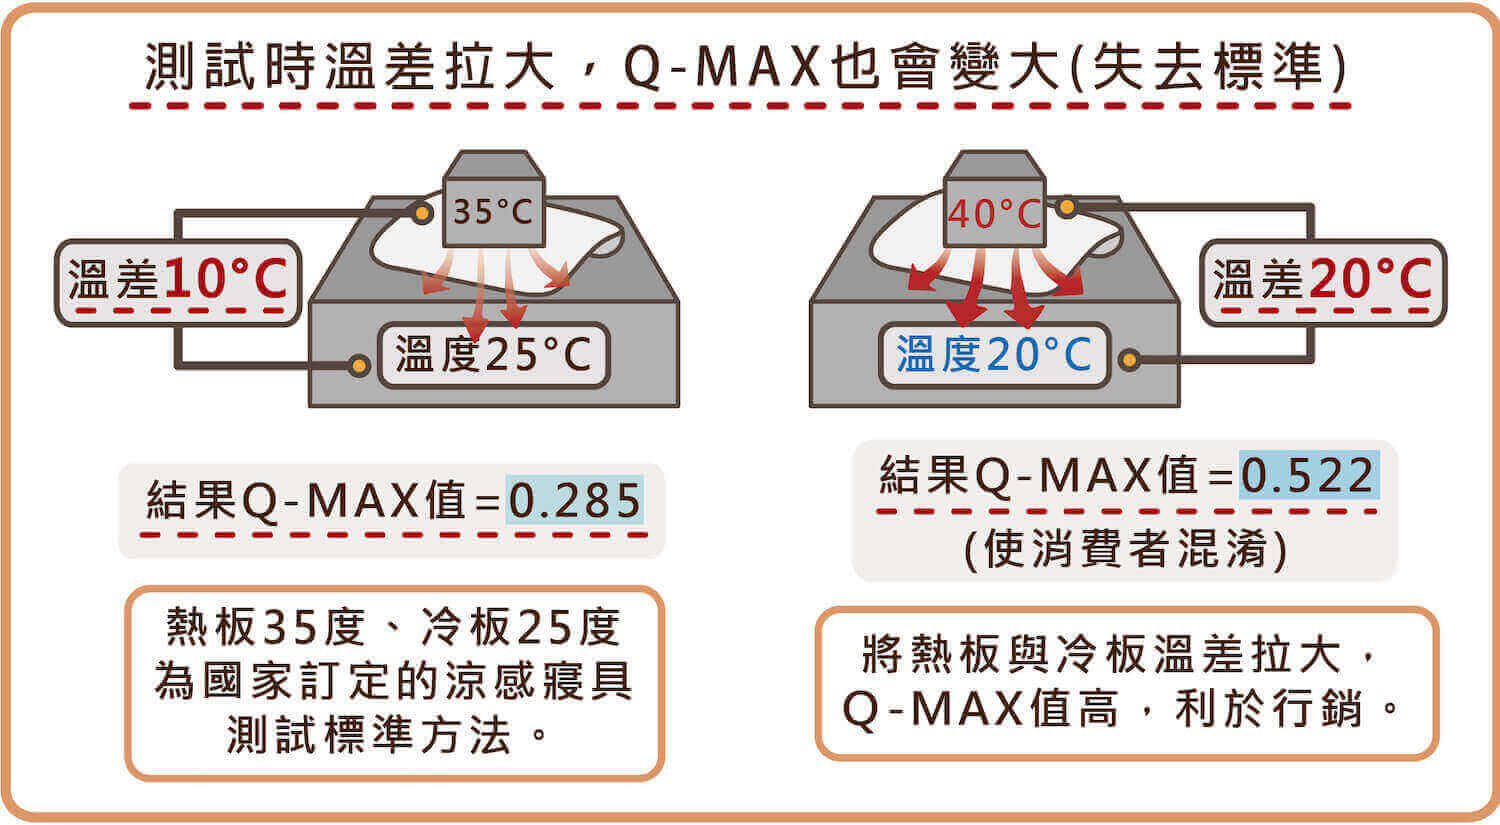 測試溫差拉大時，Q-MAX值也會變大，而失去標準混淆消費者